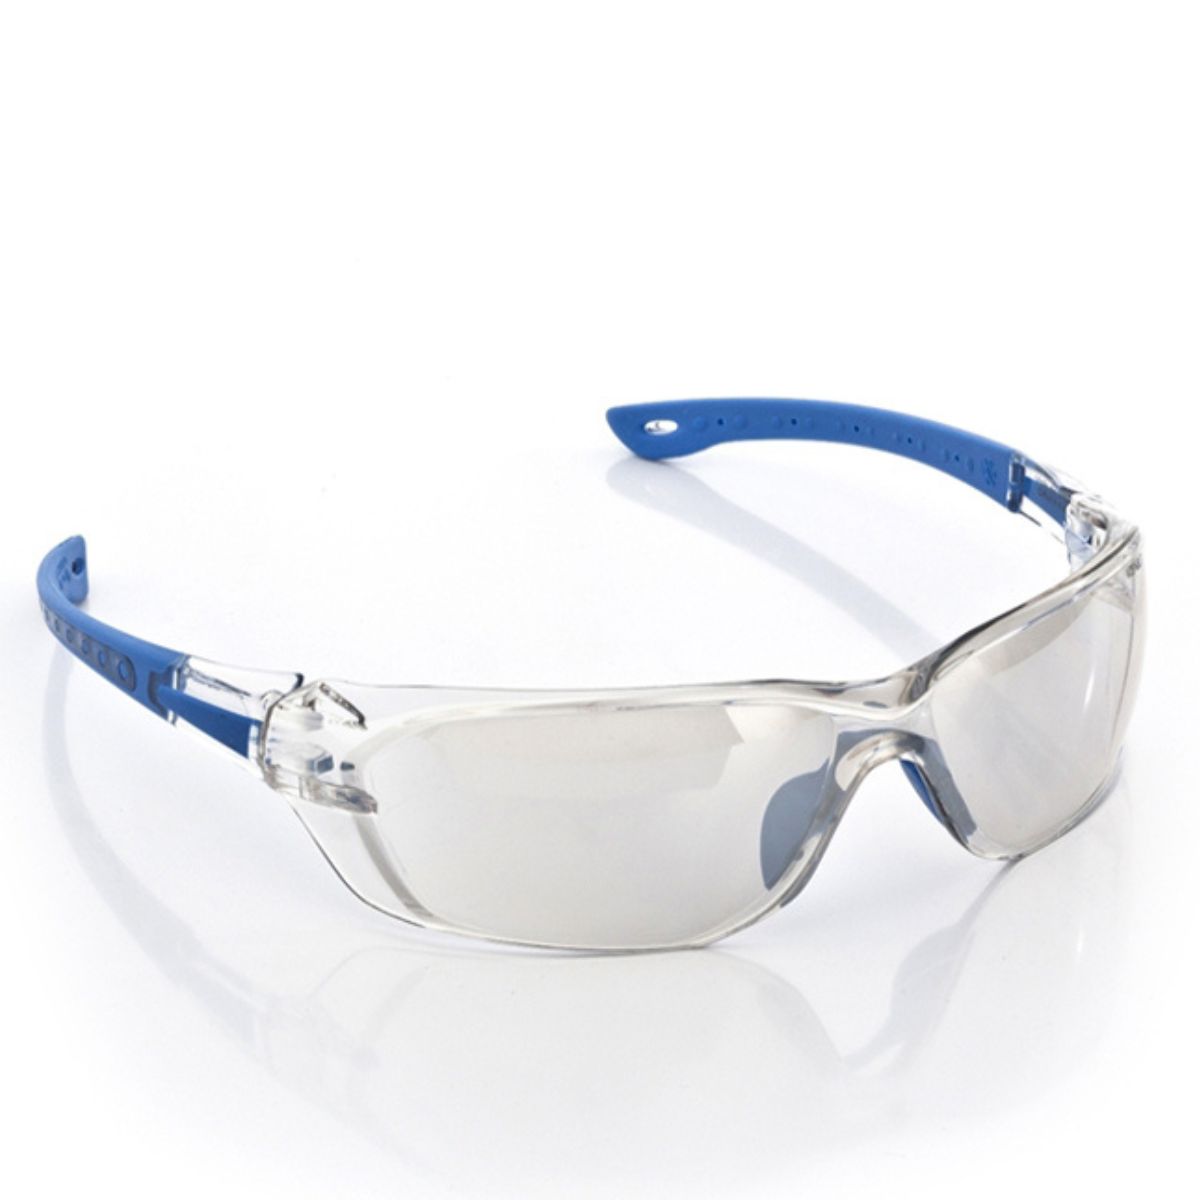 Óculos de Proteção MOD. VVISION 600 IN AND OUT Espelhado Antiembaçante Antirrisco  - VOLK